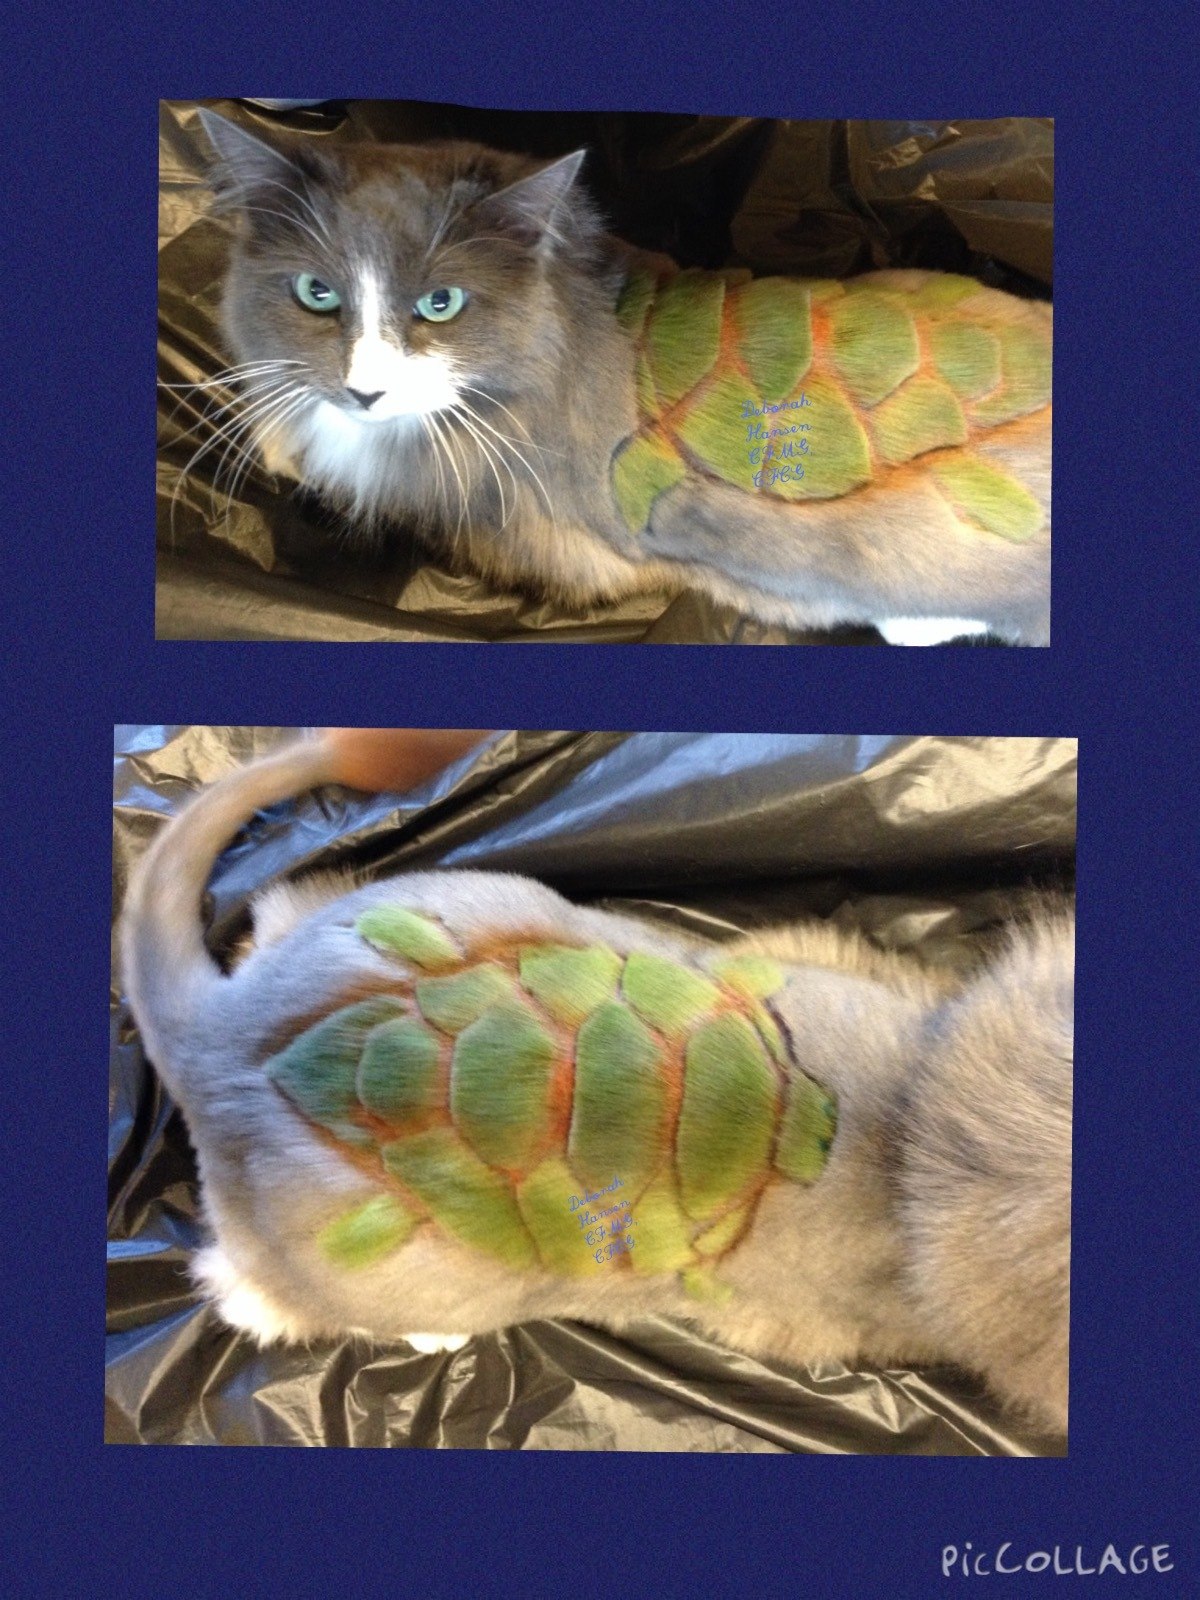 Sea Turtle, by Deborah Hansen, CFMG, CFCG, creative cat grooming